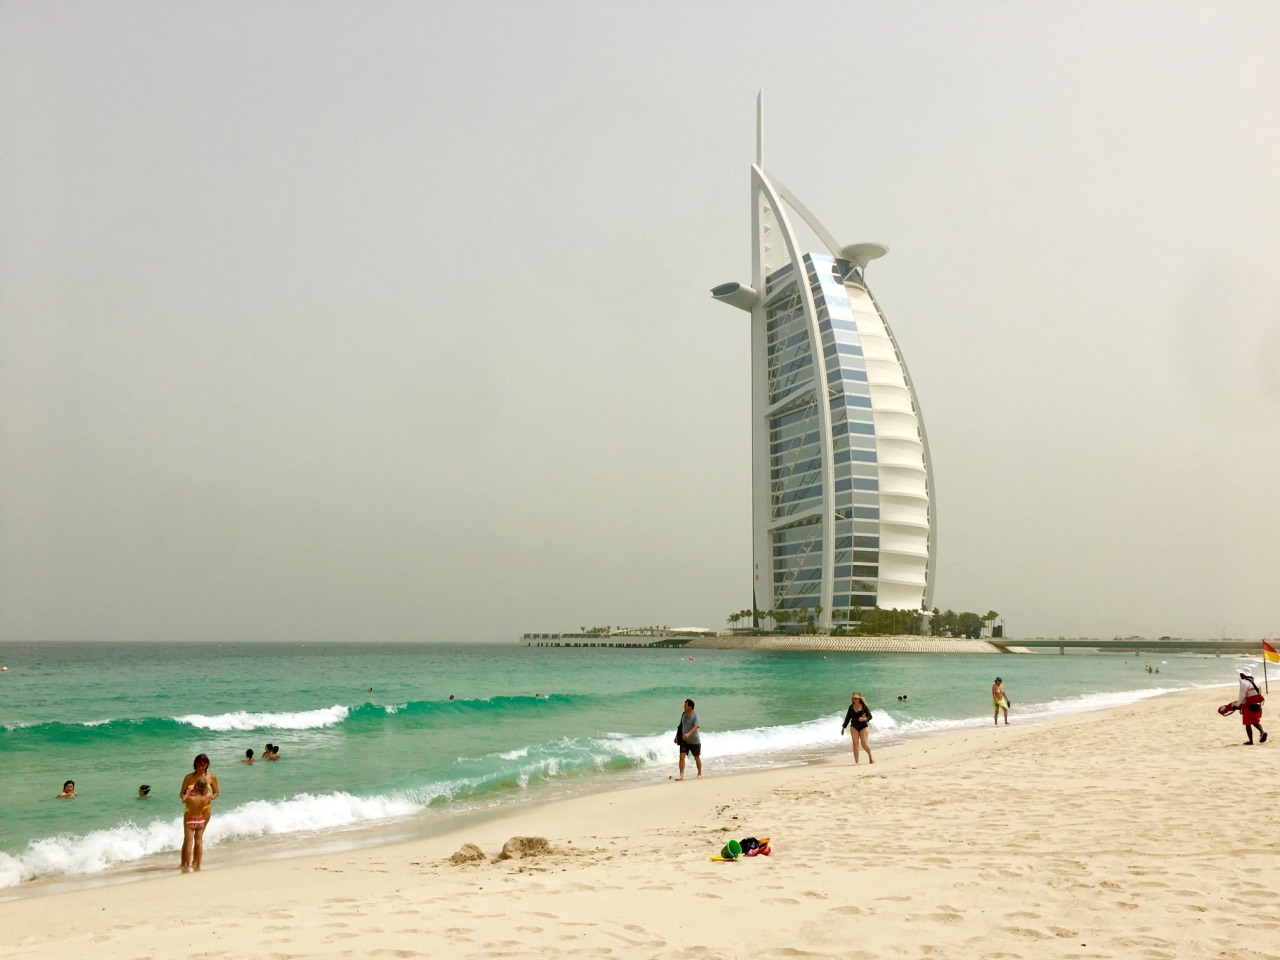 迪拜帆船酒店 阿拉伯塔酒店因外形酷似船帆，又称帆船酒店，酒店建在离沙滩岸边280米远的波斯湾内的人工